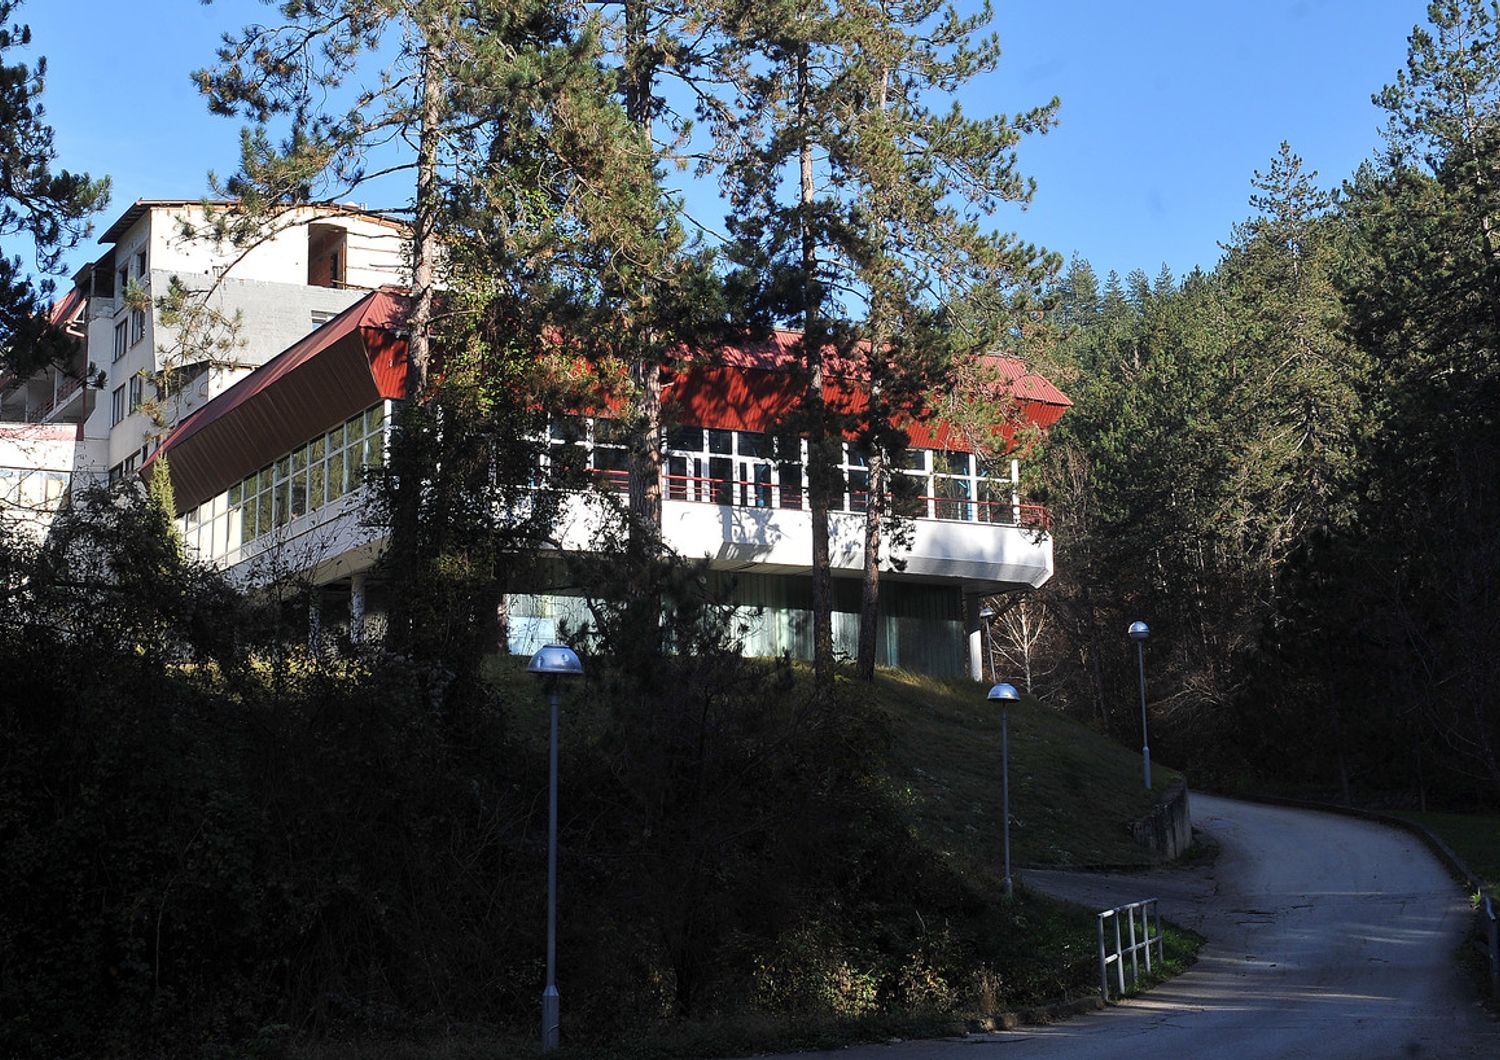 L'hotel Vilina Vlas nei pressi della citt&agrave; di Visegrad, nella regione serba della Bosnia-Erzegovina